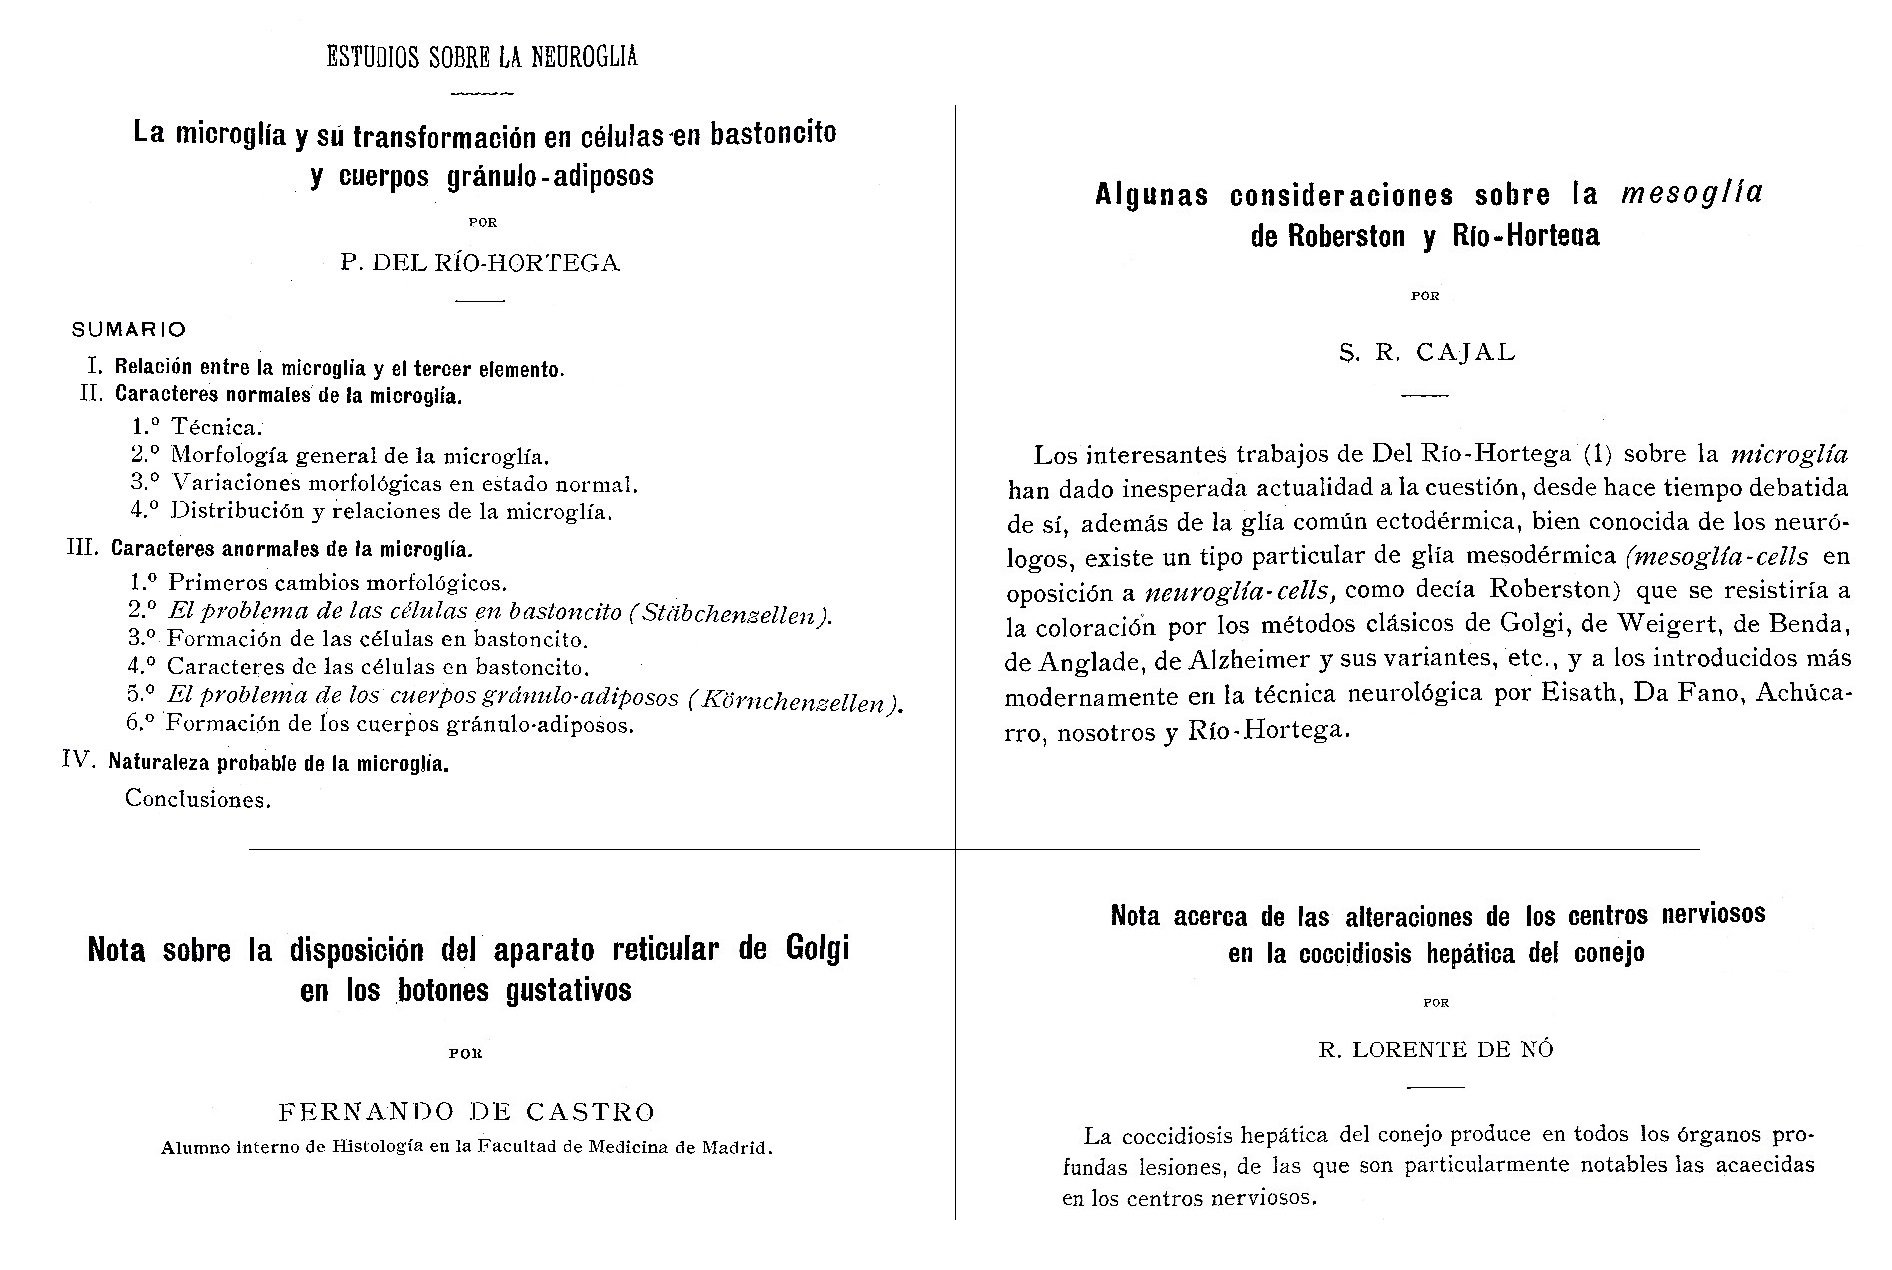 Artículos publicados por Río Hortega, Ramón y Cajal , Fernando de Castro y Rafael Lorente de Nó en Trabajos del Laboratorio de Investigaciones Biológicas.